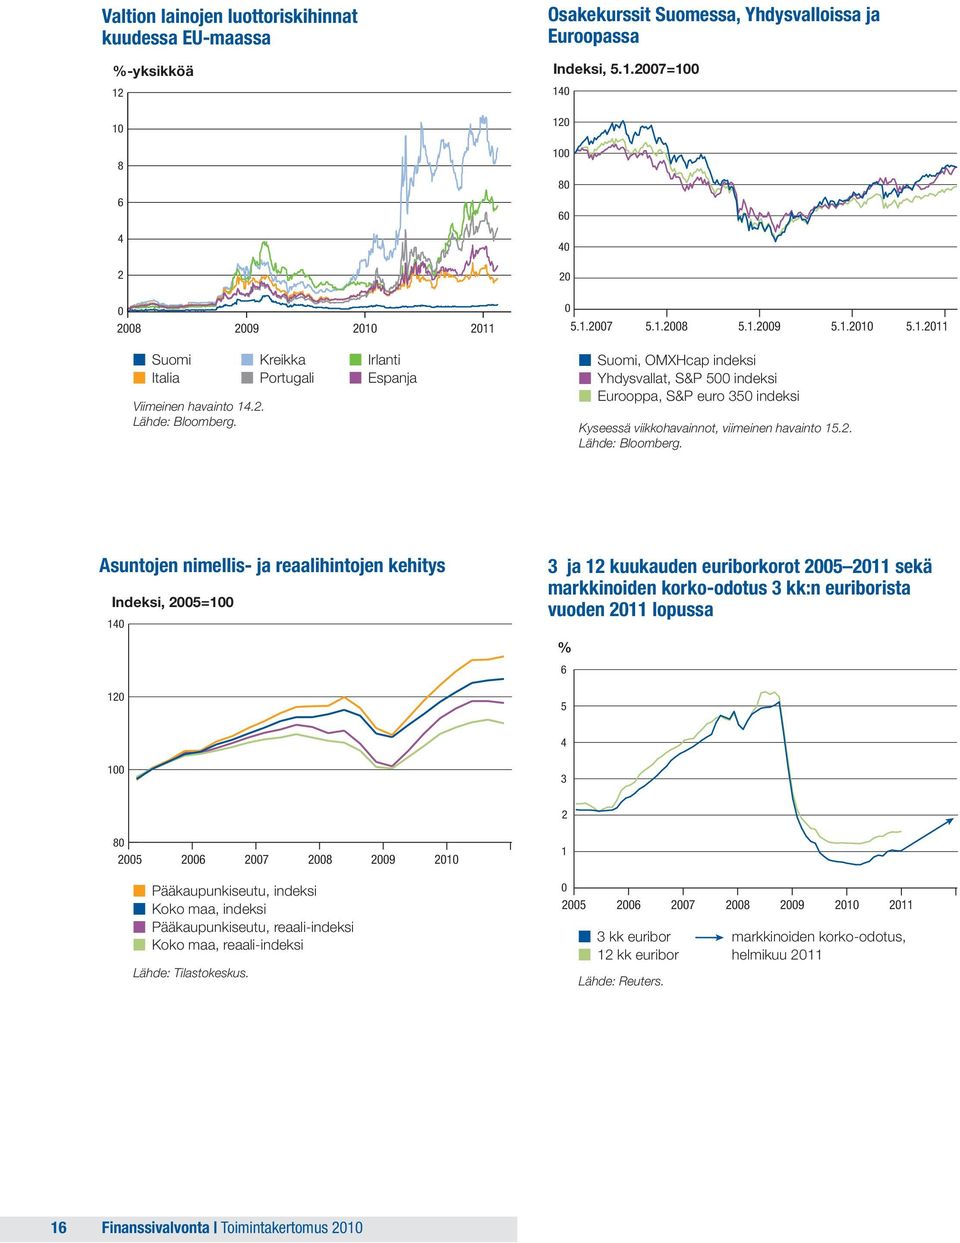 Kreikka Portugali Irlanti Espanja Suomi, OMXHcap indeksi Yhdysvallat, S&P 500 indeksi Eurooppa, S&P euro 350 indeksi Kyseessä viikkohavainnot, viimeinen havainto 15.2. Lähde: Bloomberg.